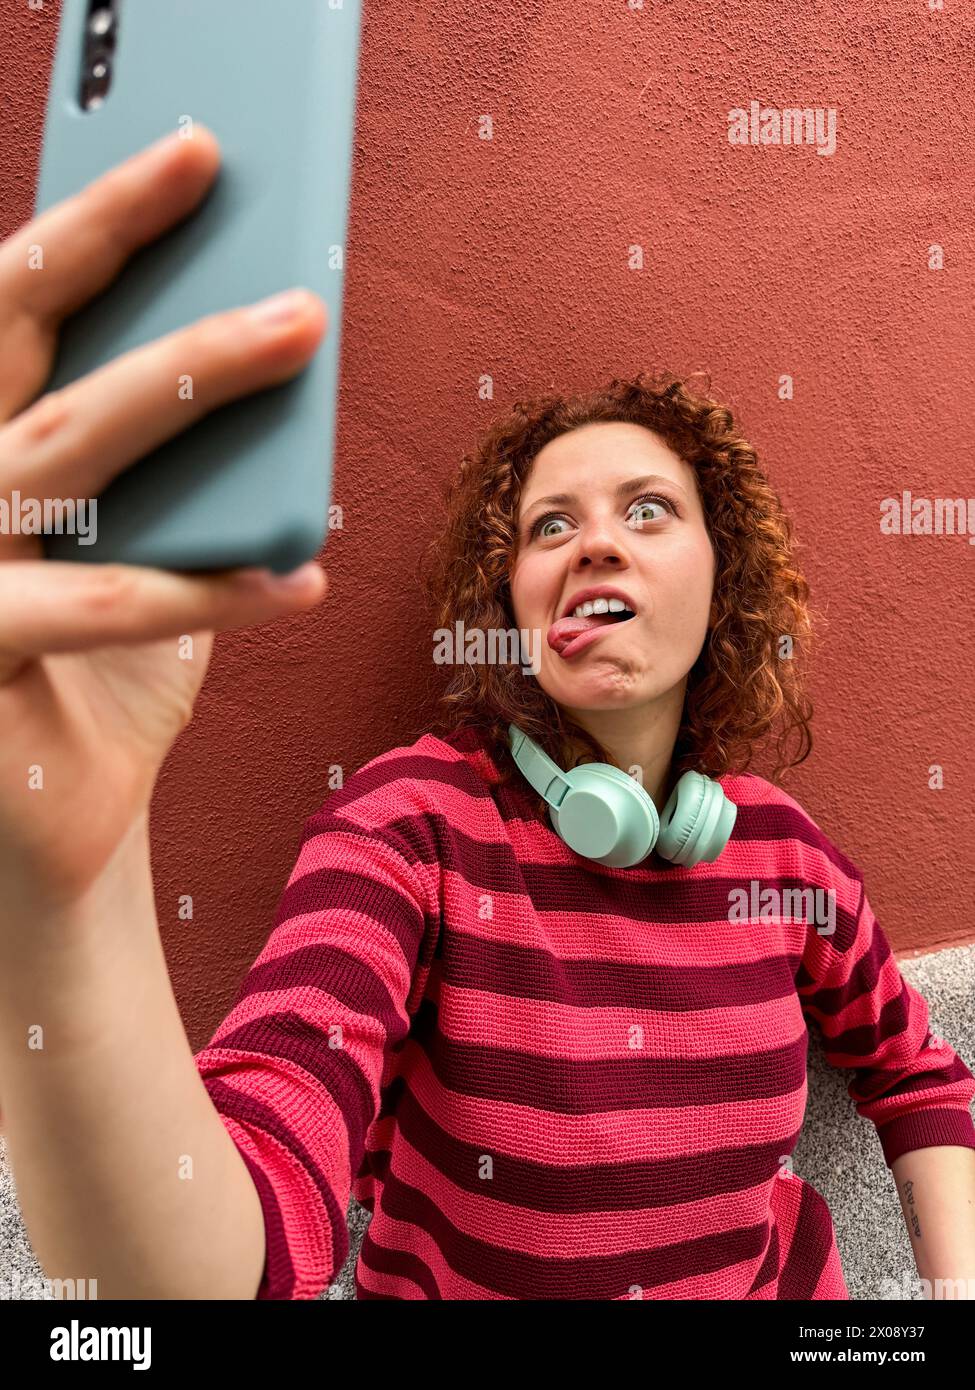 Una giovane donna rossa con capelli ricci e cuffie sta facendo un giocoso grimace mentre scatta un selfie contro un muro rosso Foto Stock